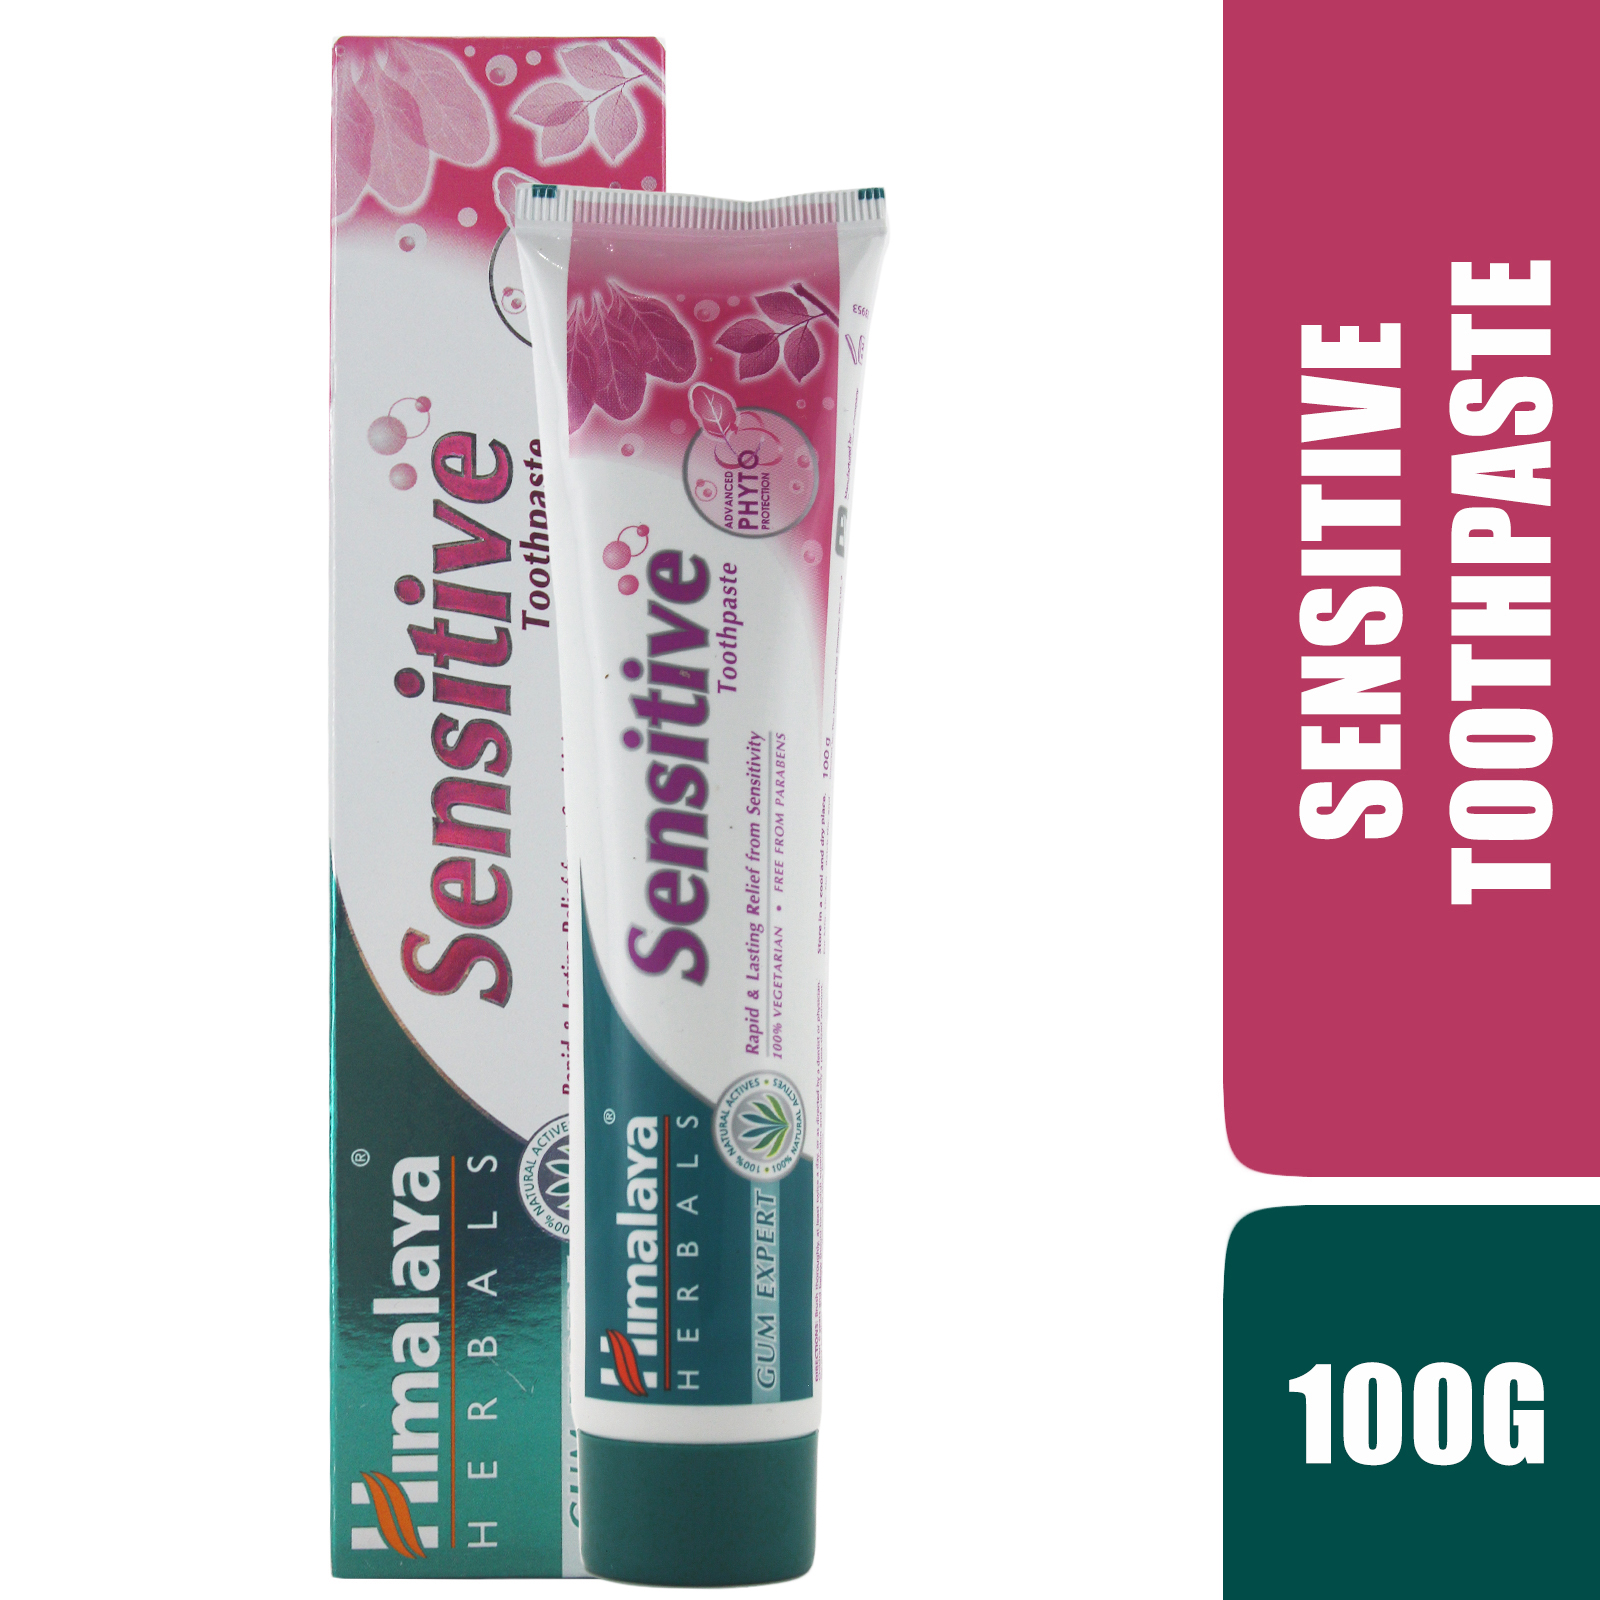 Ba tuýp kem đánh răng cho răng nhạy cảm - Himalaya Sensitive Toothpaste 100 g